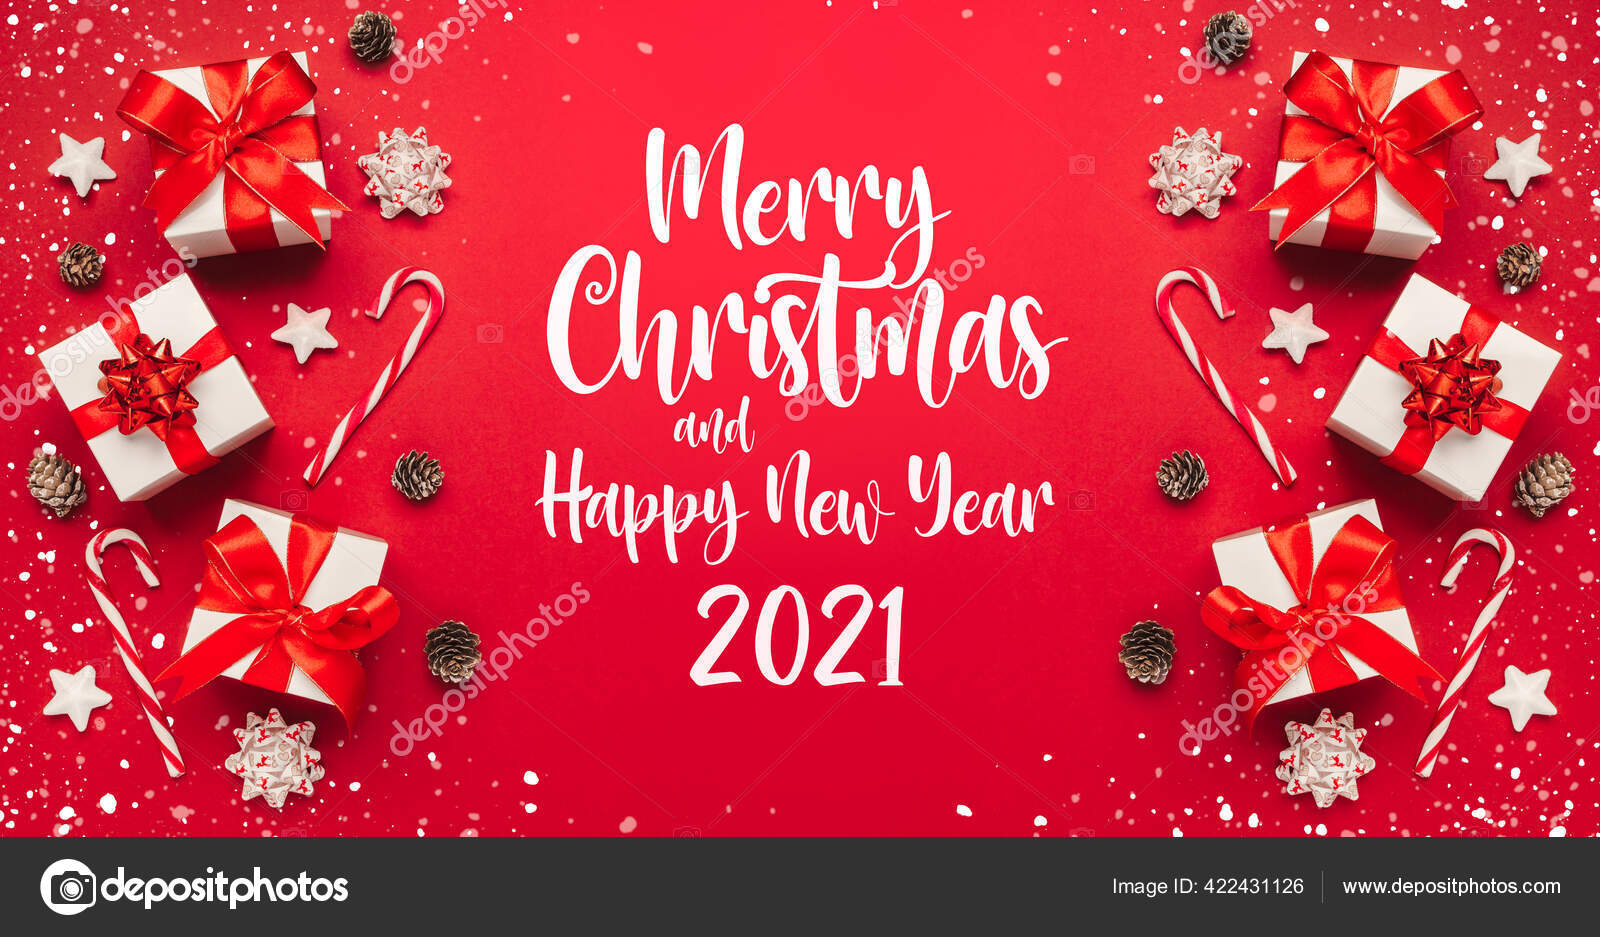 Thẻ chúc mừng Giáng sinh và năm mới 2021: Gửi tặng những lời chúc Giáng sinh và năm mới ấm áp và ý nghĩa đến bạn bè và người thân yêu của bạn với những thẻ chúc mừng đầy màu sắc. Những thẻ chúc mừng Giáng sinh và năm mới 2021 sẽ mang lại sự ấm áp và hạnh phúc đến cho mọi người.